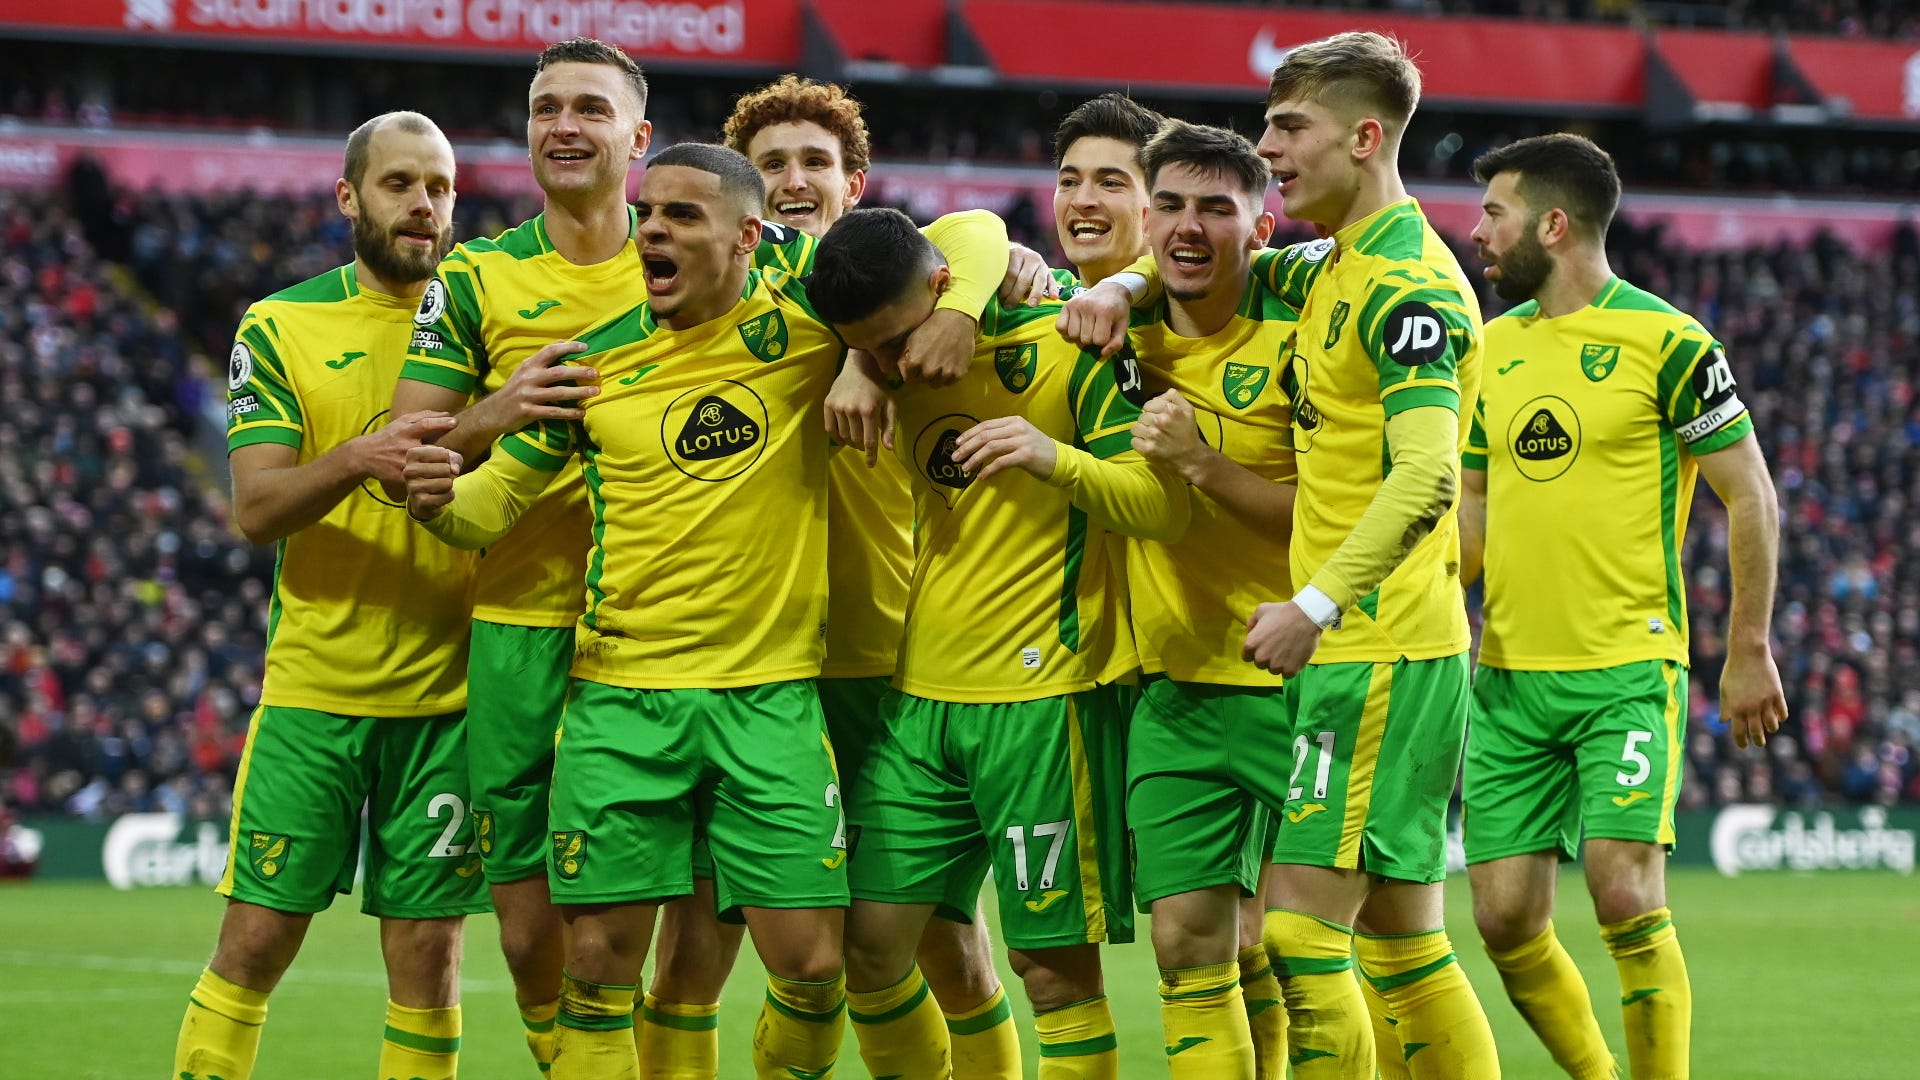 Đội hình Norwich City đã sẵn sàng khi Dean Smith gửi thông điệp trước cuộc đụng độ Leeds United